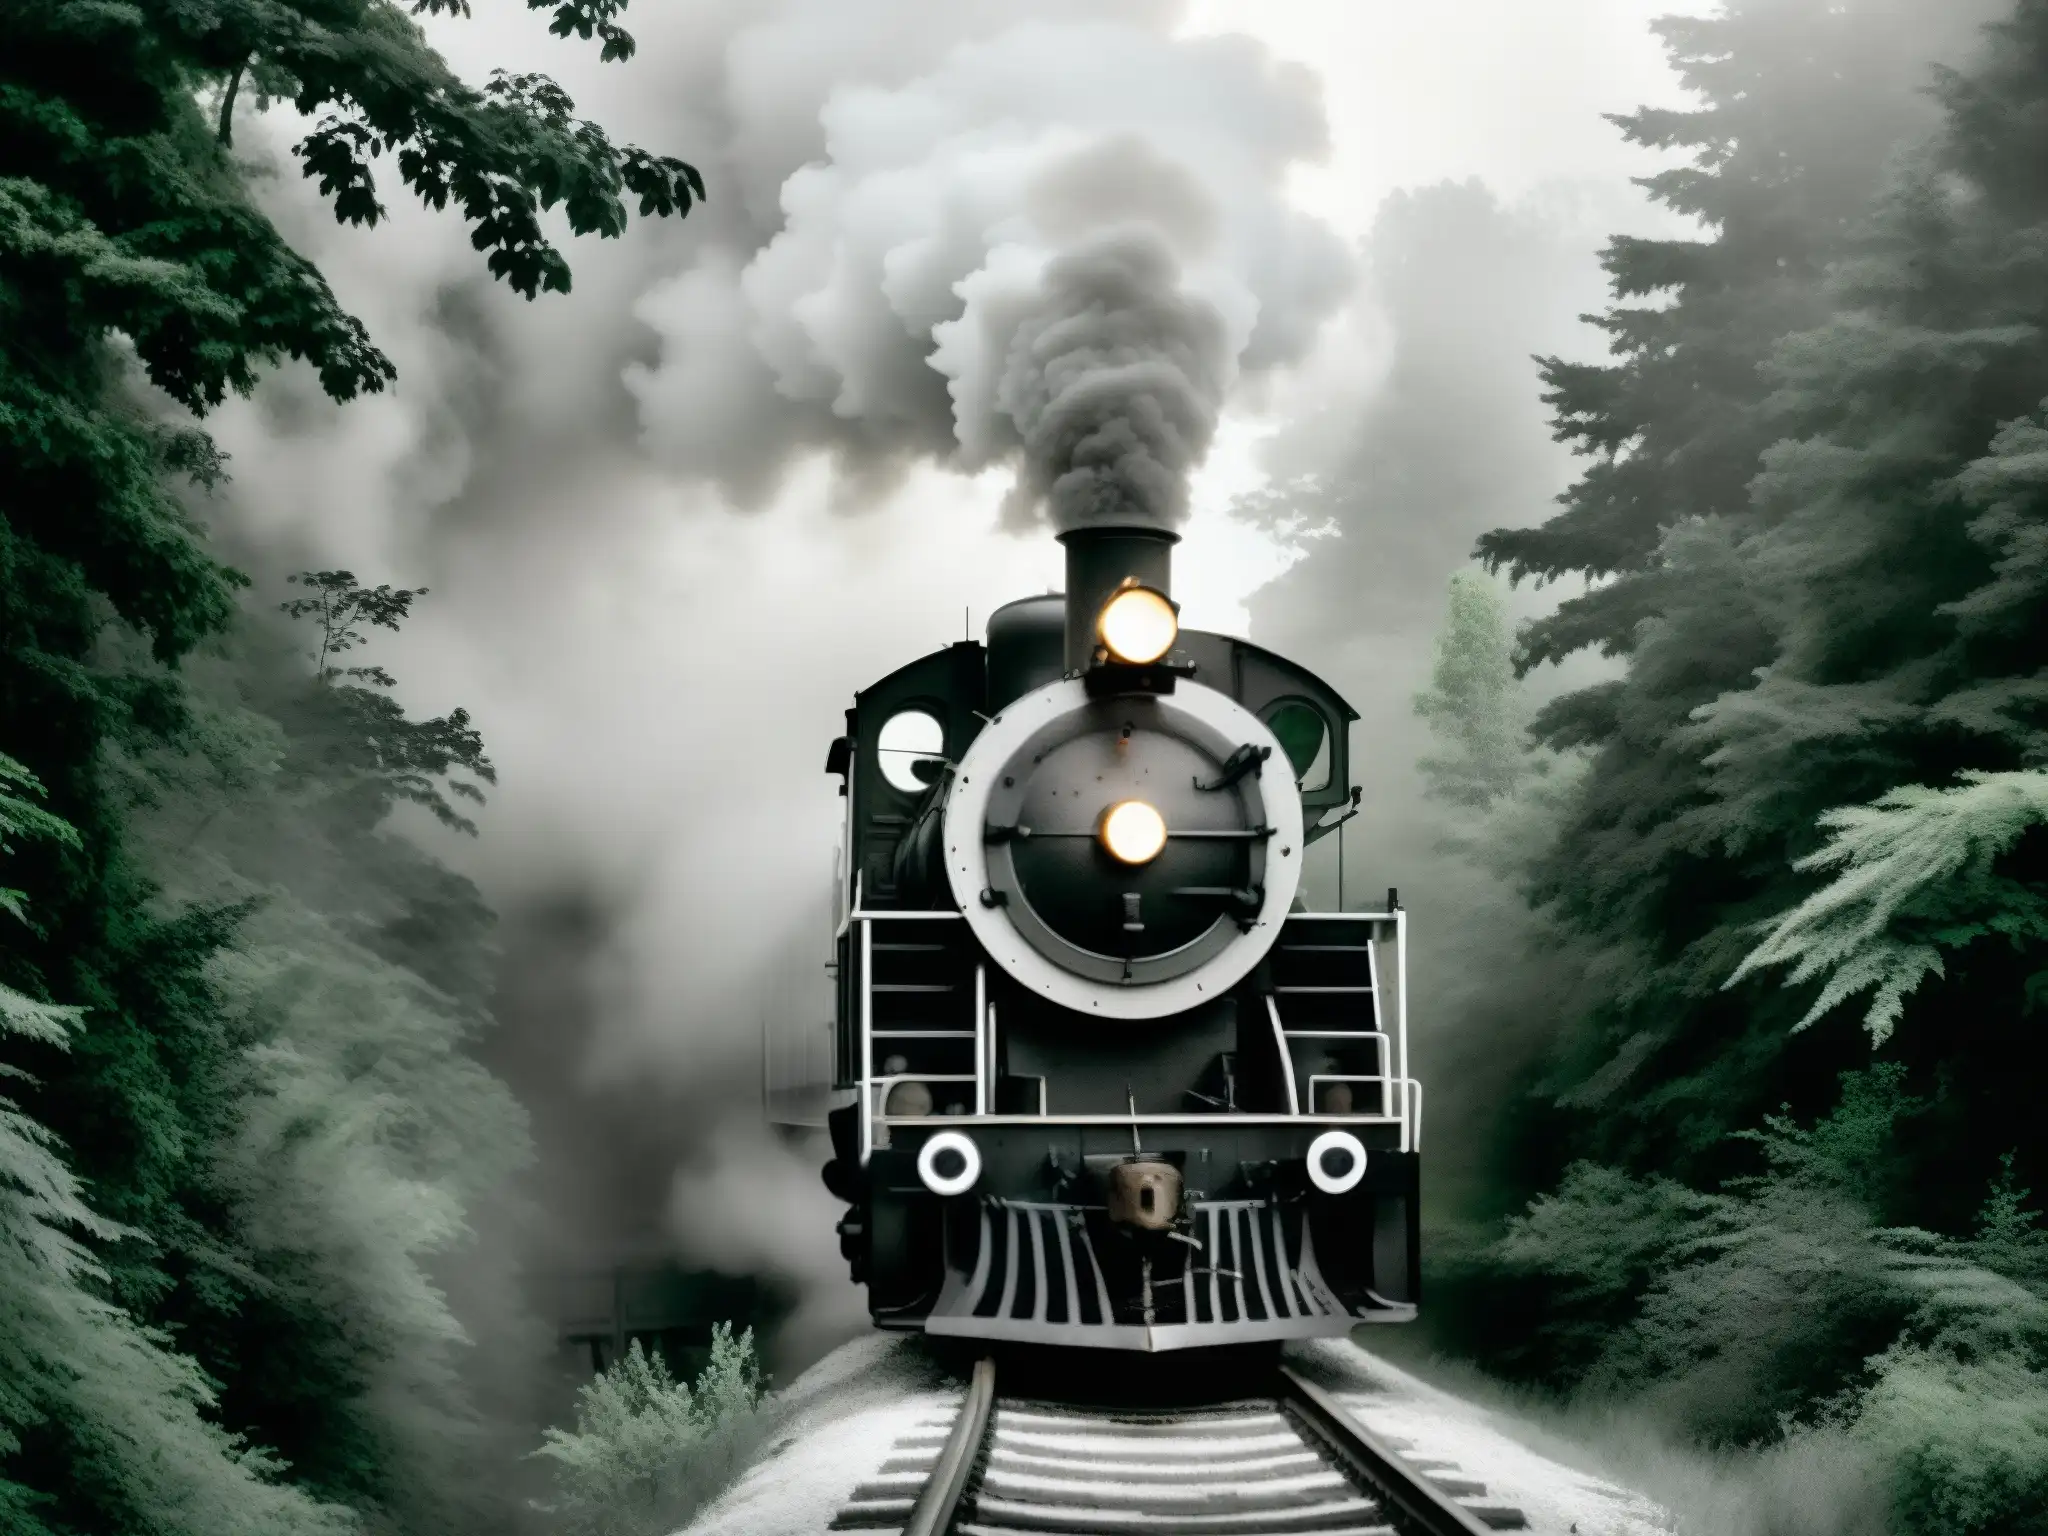 Un antiguo tren de vapor avanza entre un bosque denso, envuelto en una misteriosa niebla